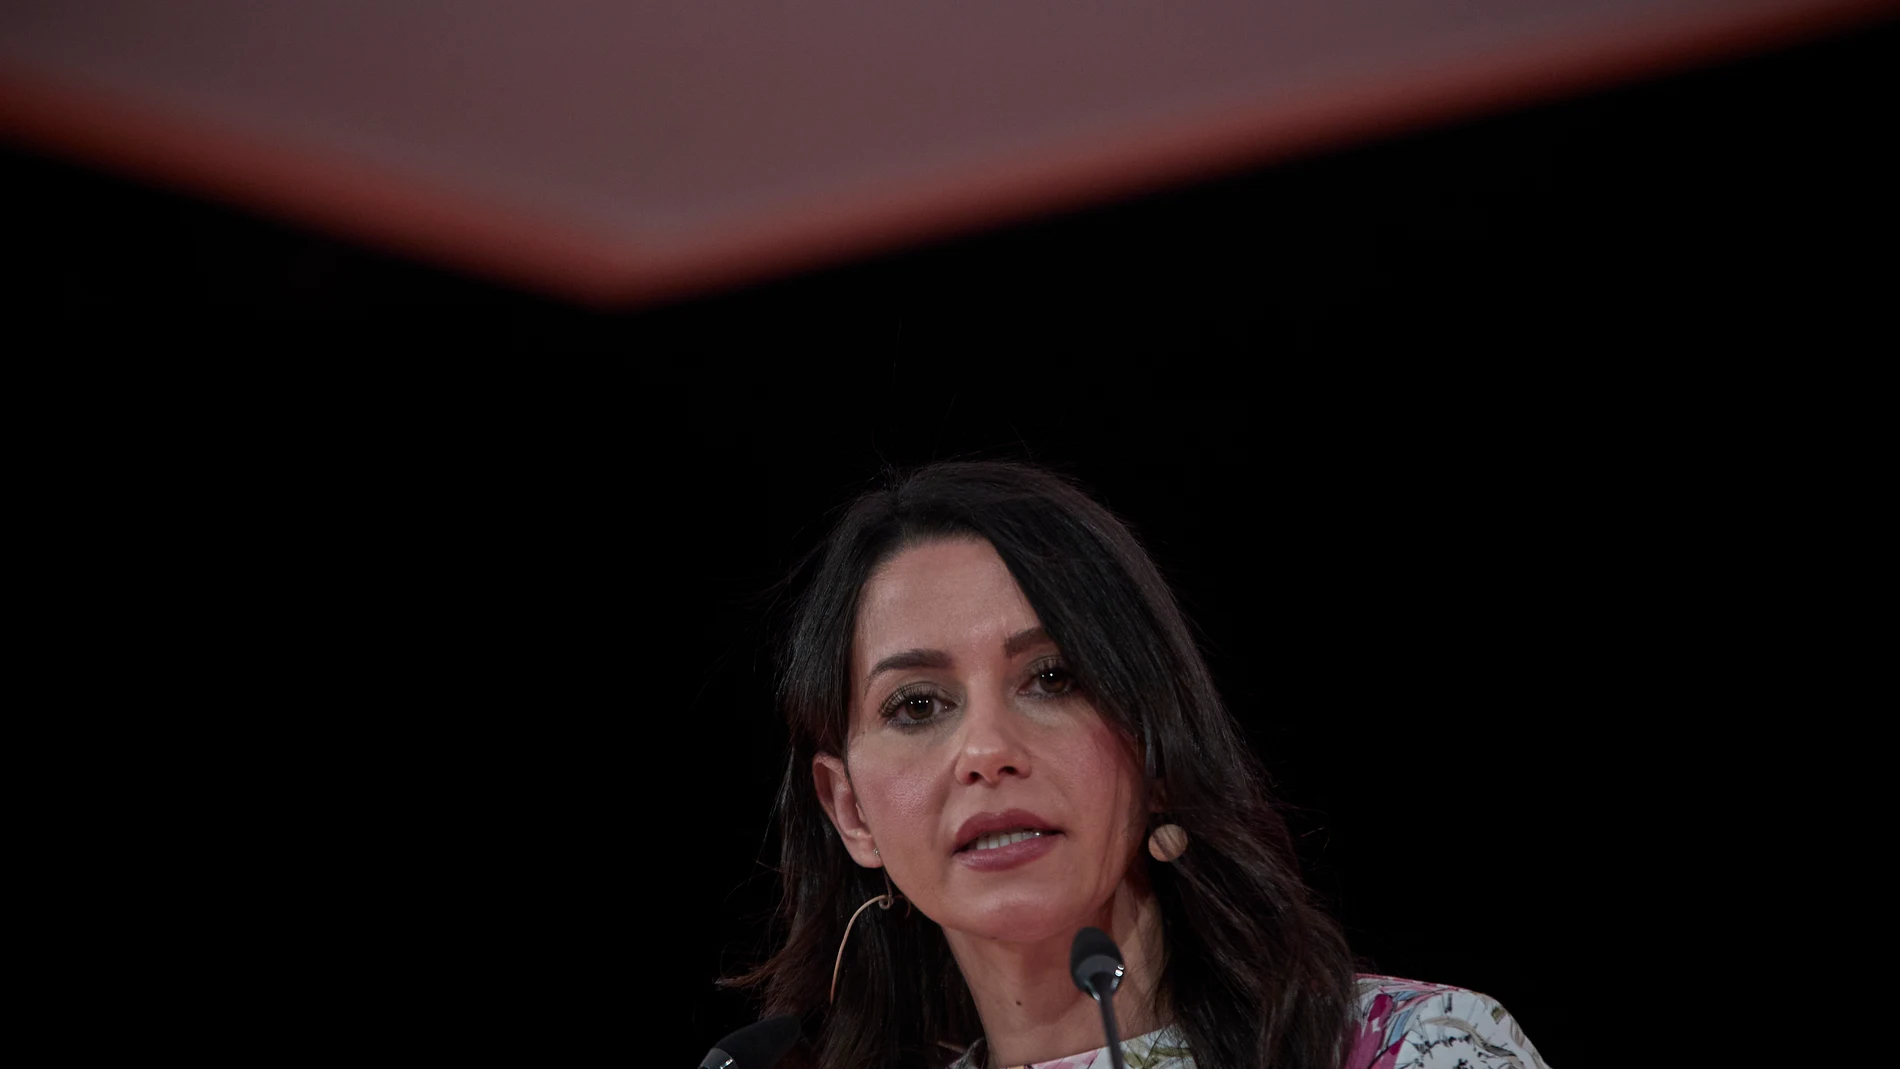 La presidenta de Ciudadanos, Inés Arrimadas